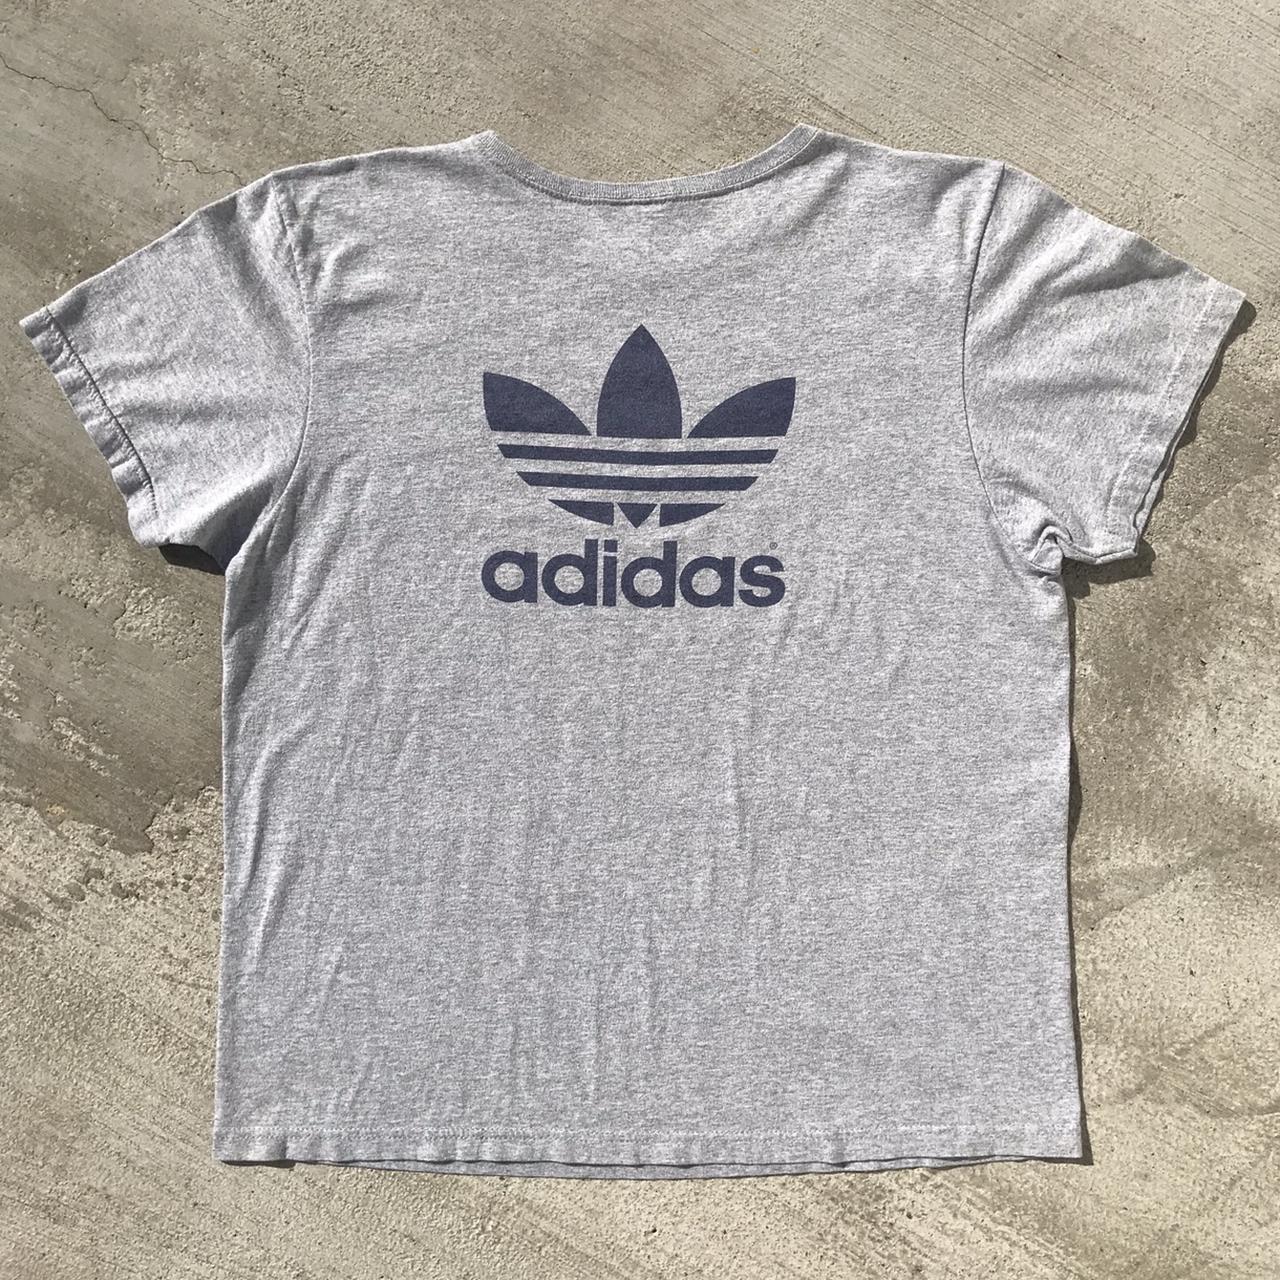 Adidas Women's T-shirt (2)